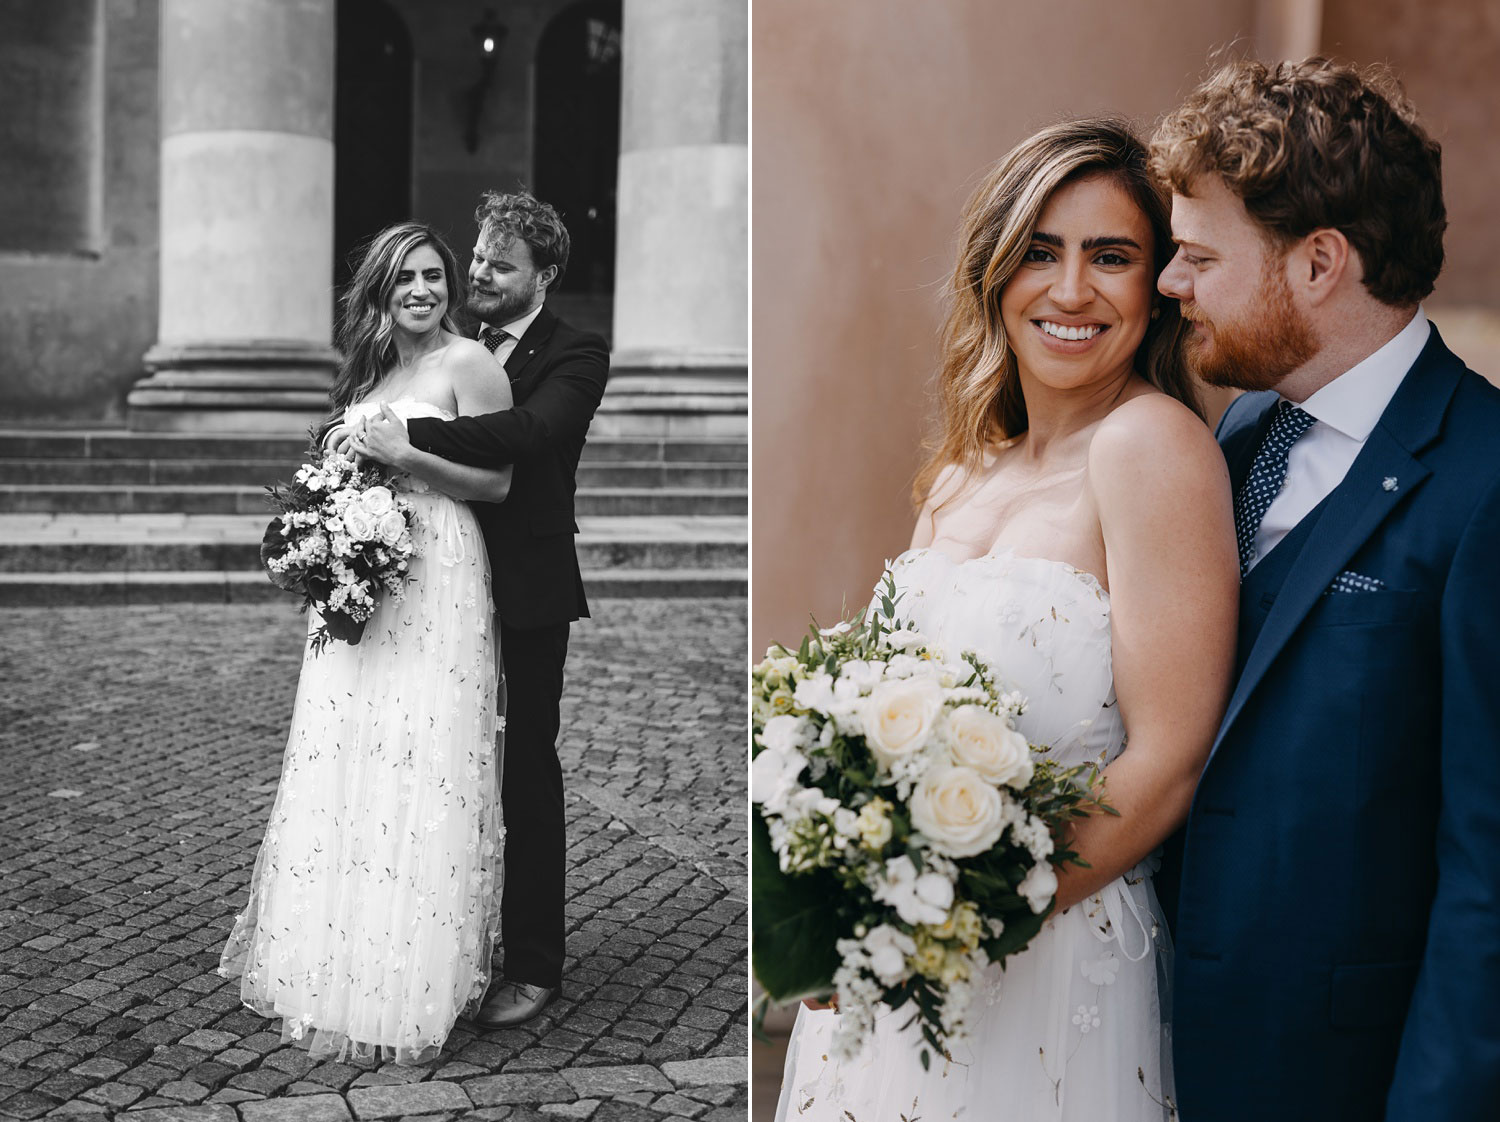 Copenhagen Wedding Photography - Romantic Couple Pose